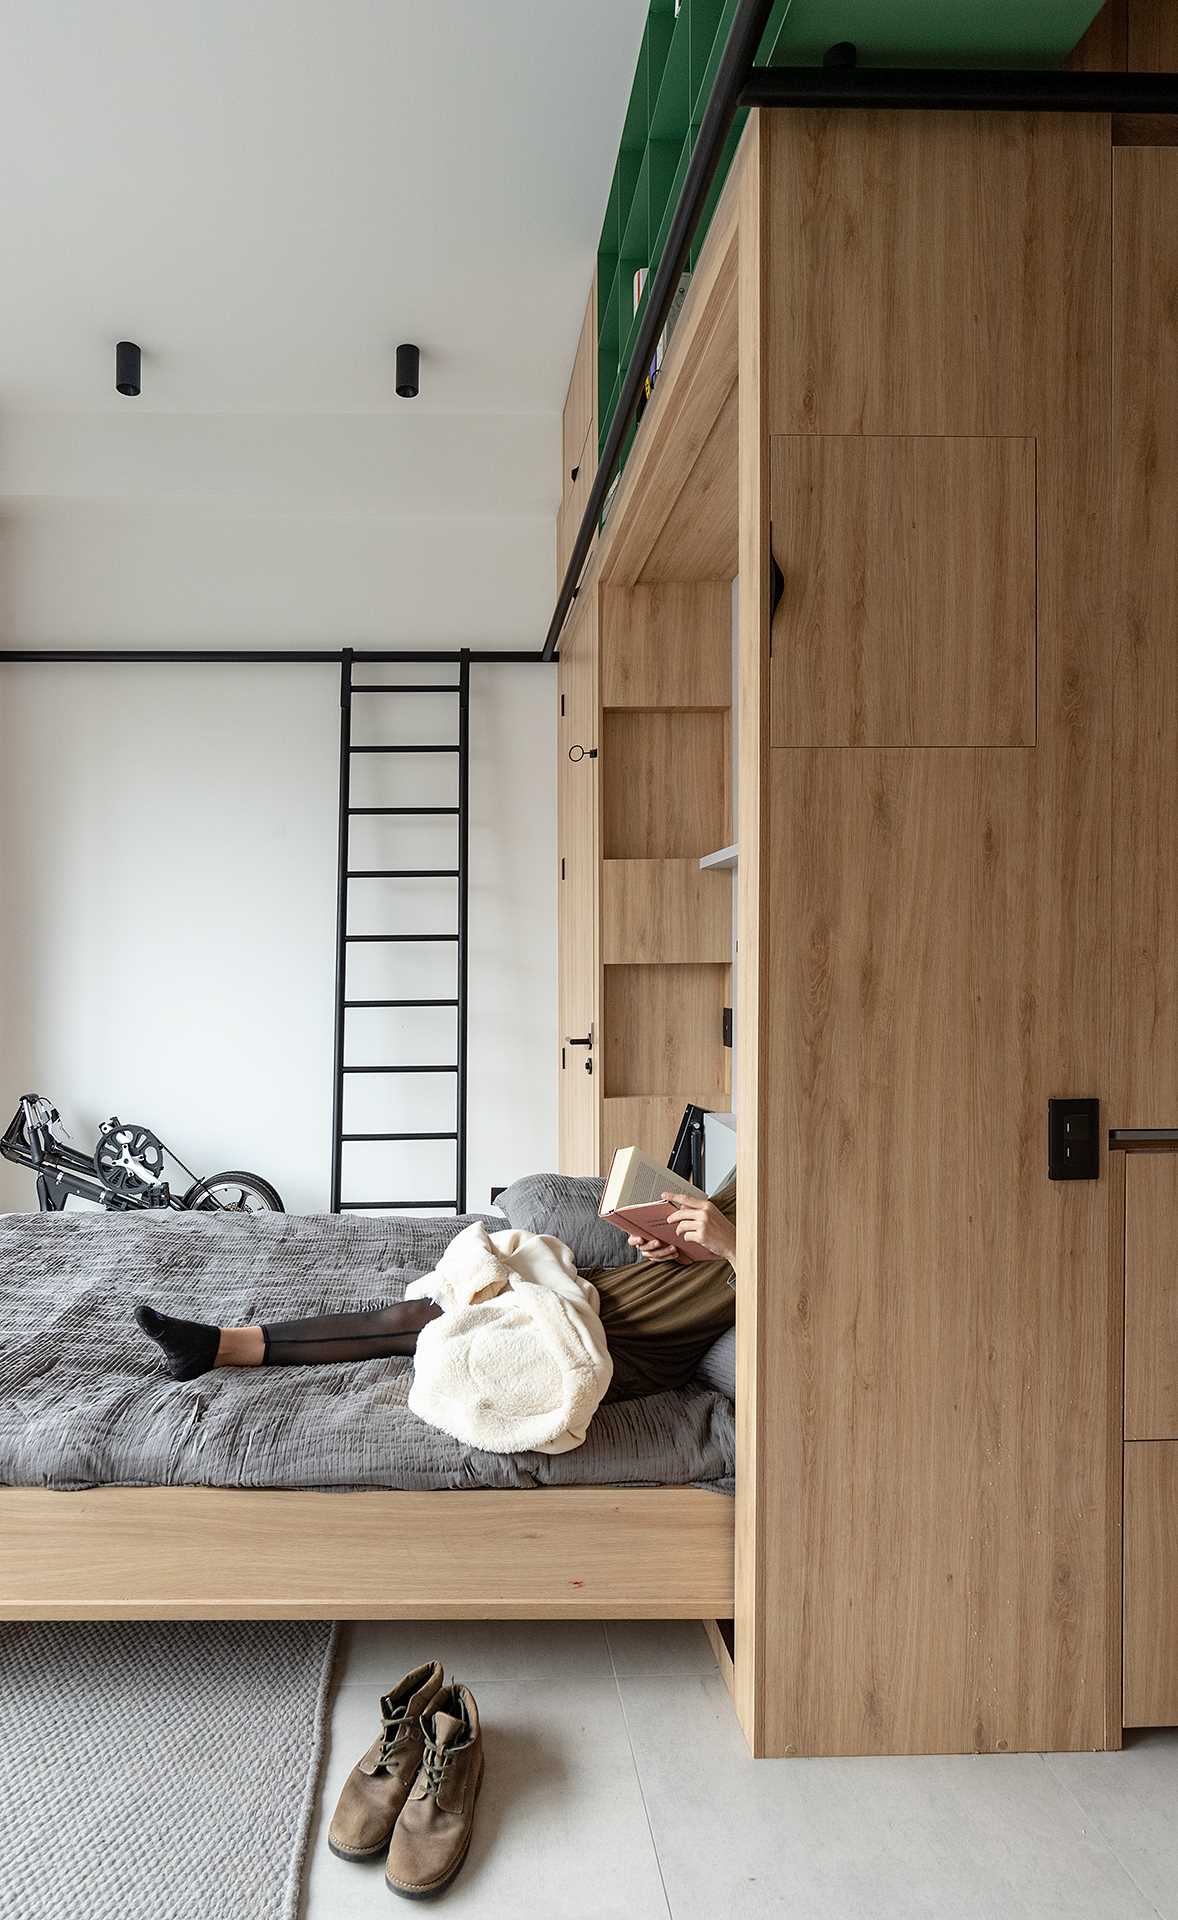 Thiết kế tủ đồ giúp tận dụng tối đa không gian trong căn hộ nhỏ - Ảnh 2.